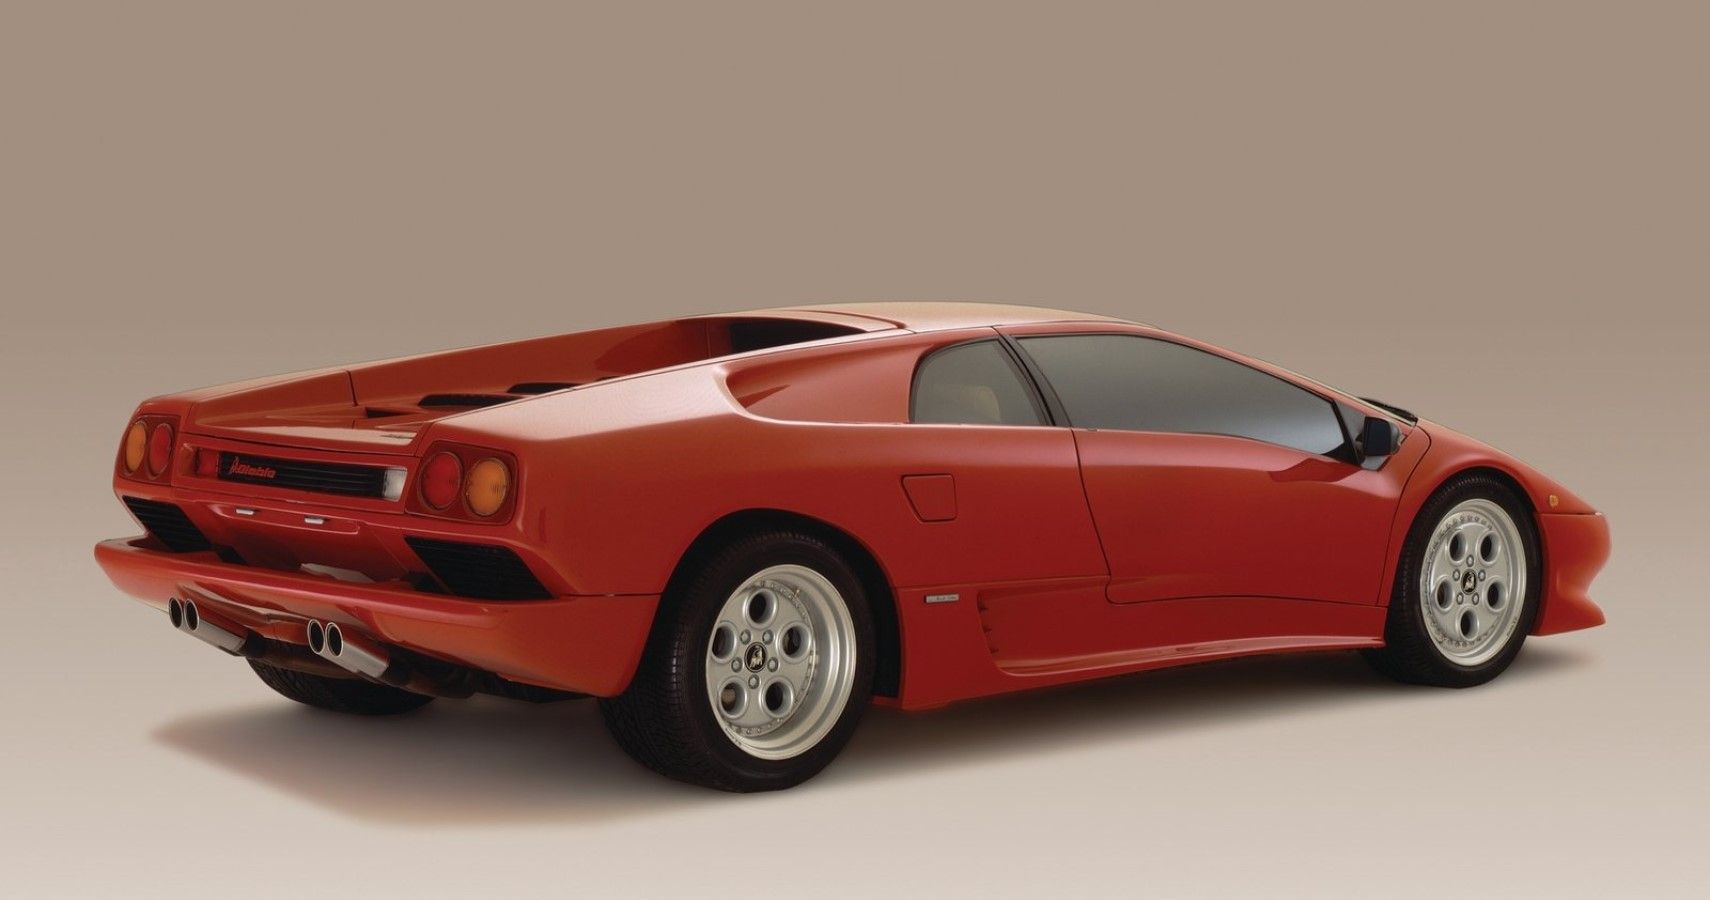 Red 1990 Lamborghini Diablo, on display